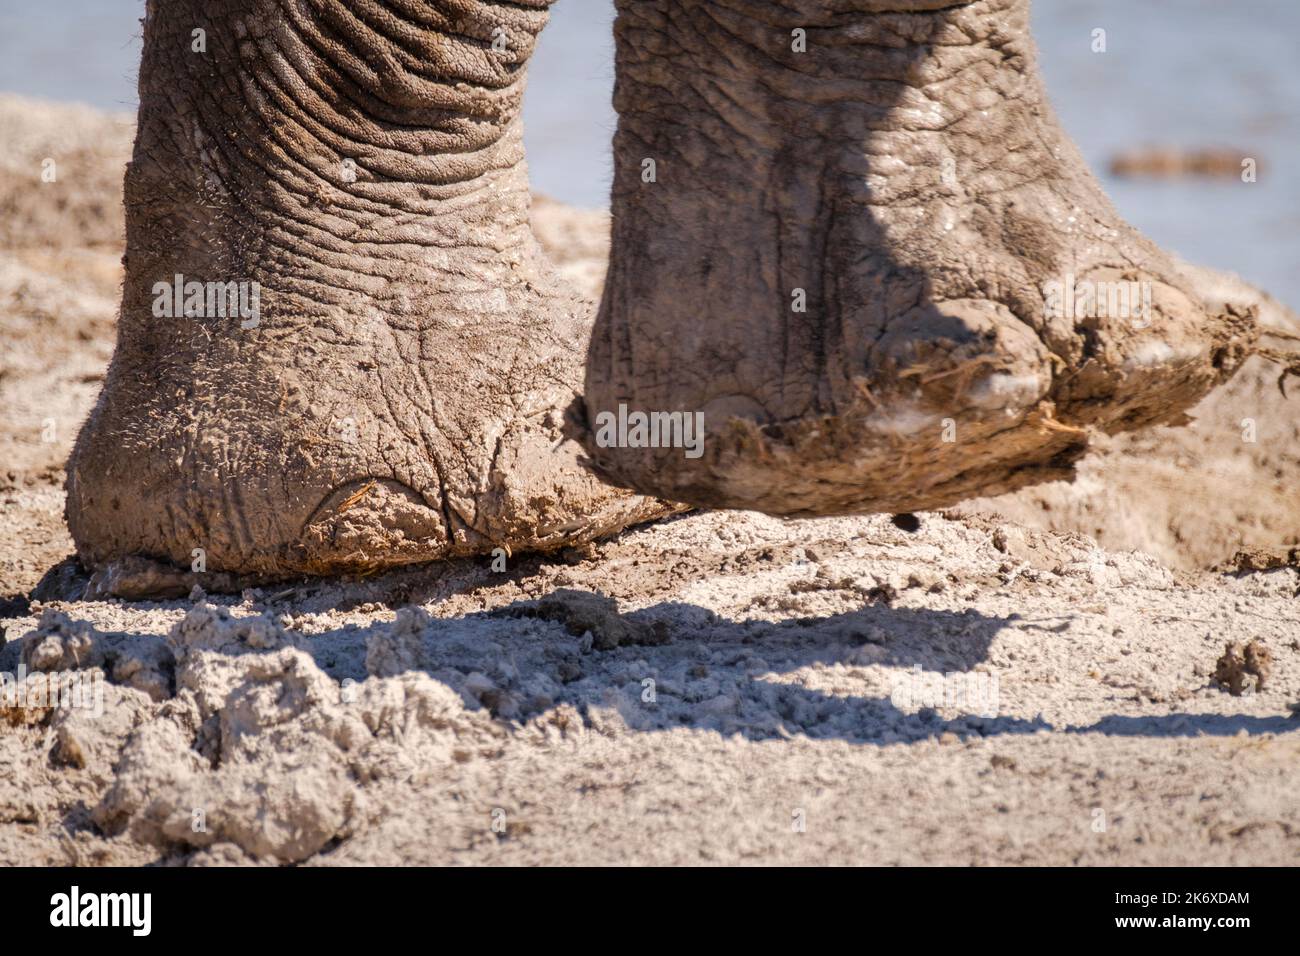 Elefantenfüße (Loxodonta africana) aus der Nähe, mit Zehen, Sohlen und großem Bein. Nxai Pan, Botswana, Afrika Stockfoto